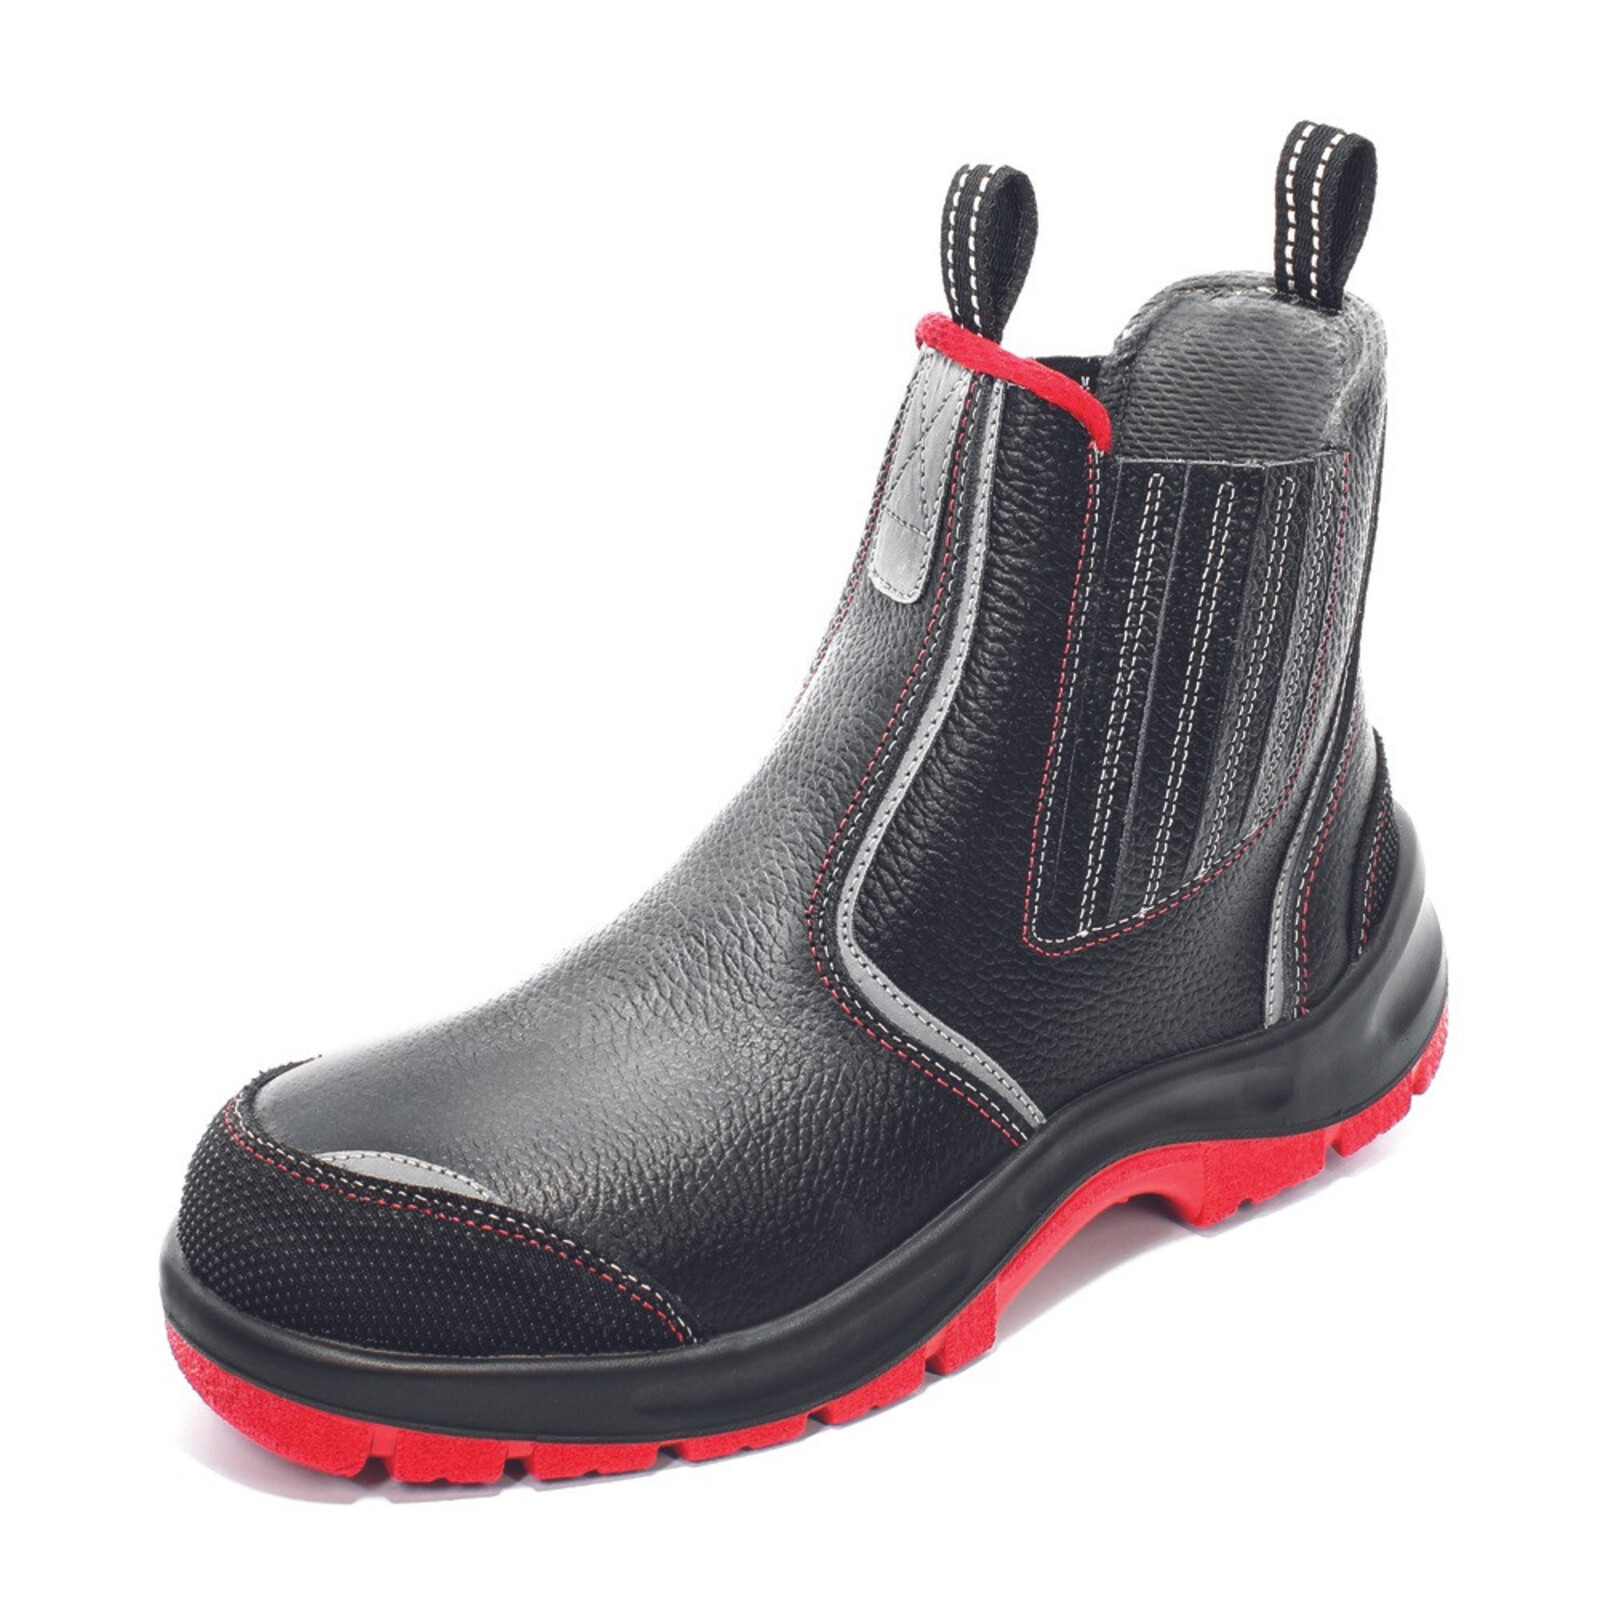 Bezpečnostná členková obuv Panda Strong Nuovo Eurotech MF S3 SRC - veľkosť: 46, farba: čierna/červená